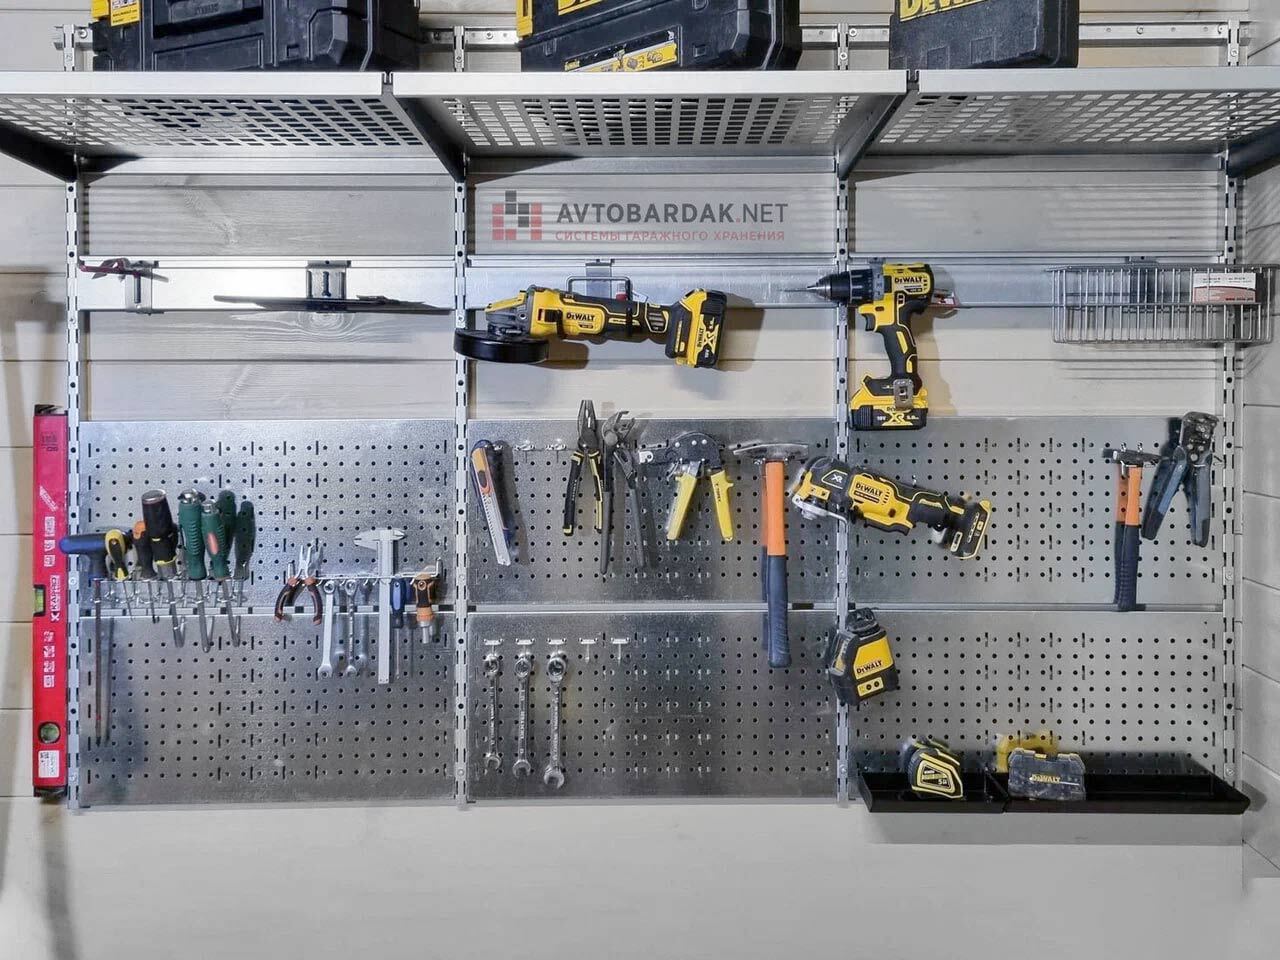 Держатель для рожковых гаечных ключей | Garage tool organization, Tool organization, Garage tools